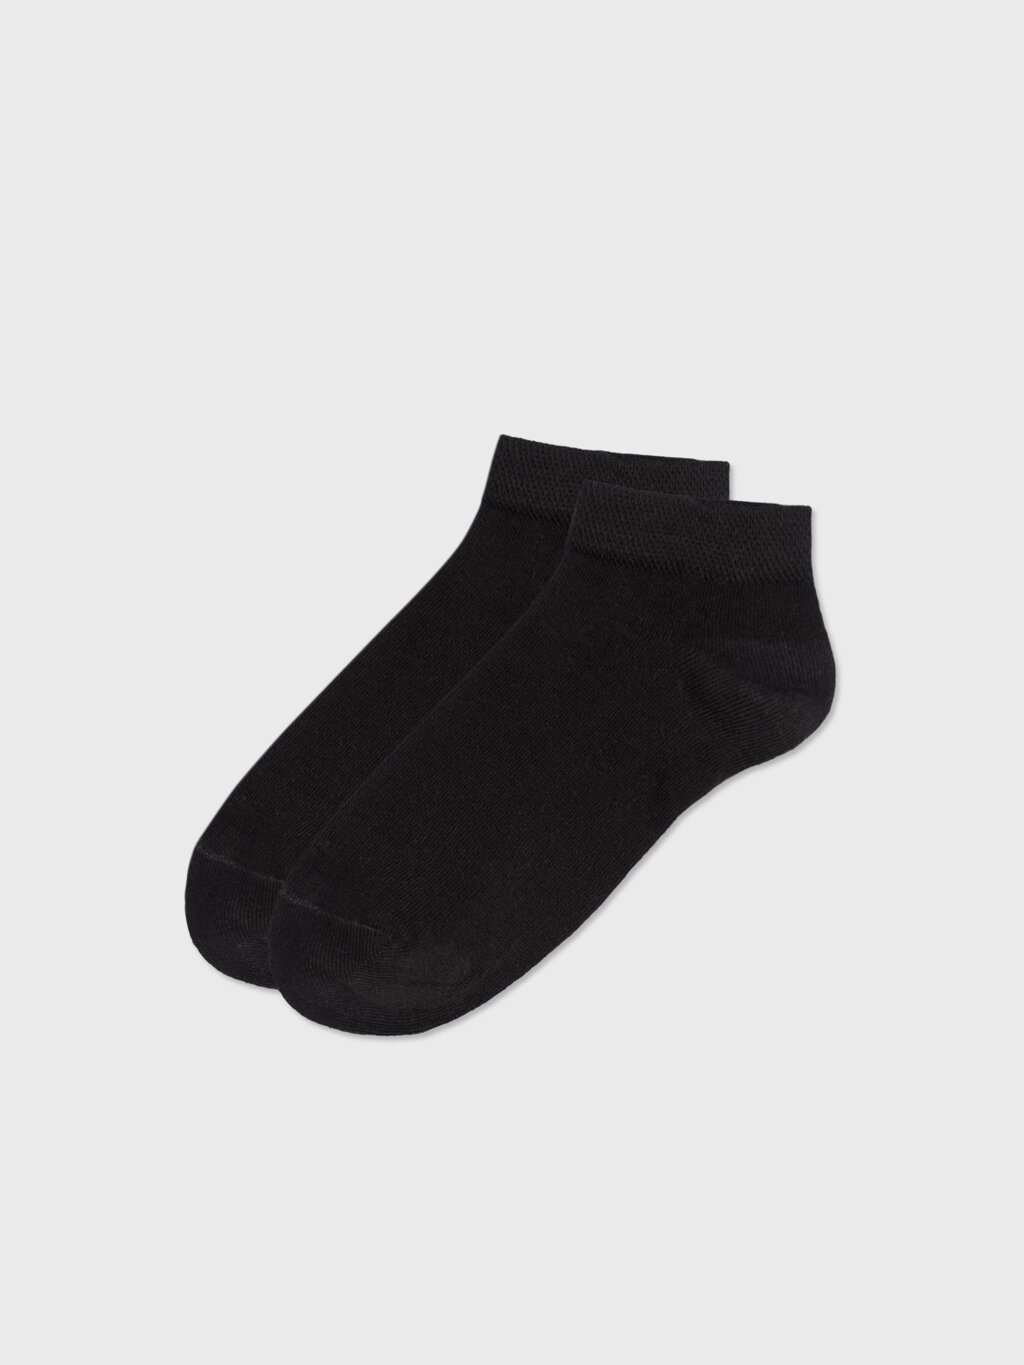 Носки укороченные черные (41-43) от компании Admi - фото 1